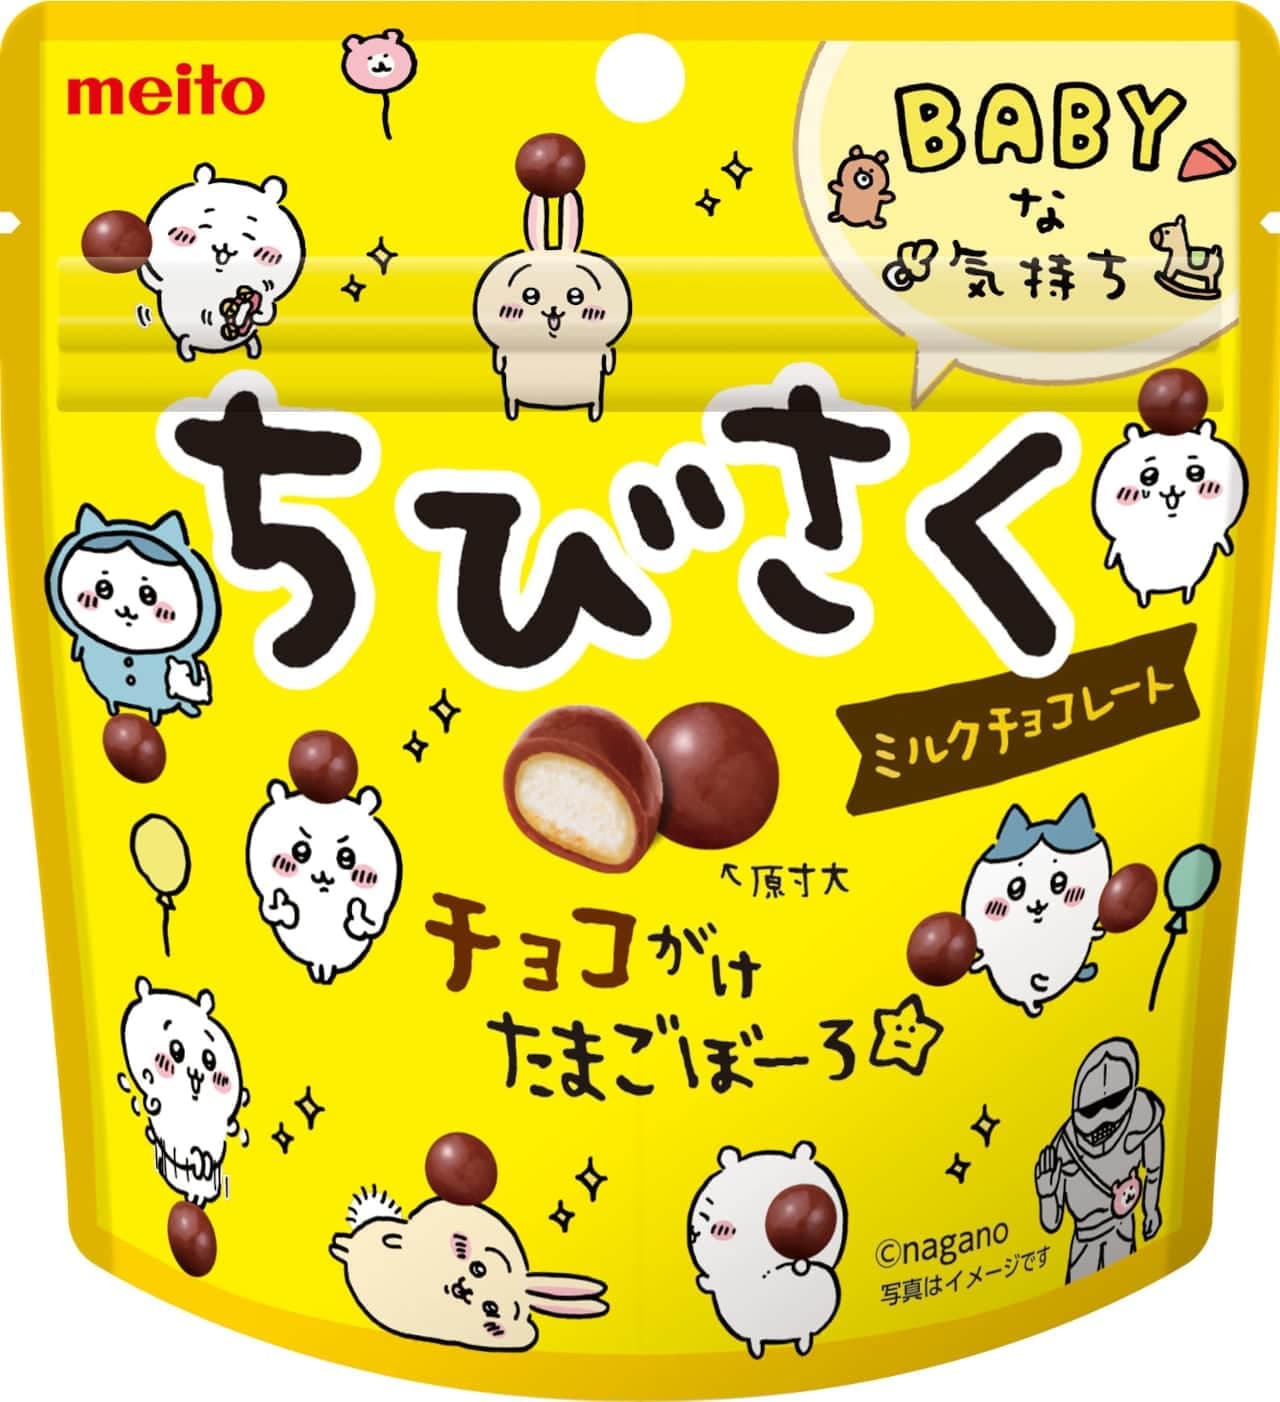 meito「ちびさく ミルクチョコレート」「ちびさく ホワイトチョコレート」